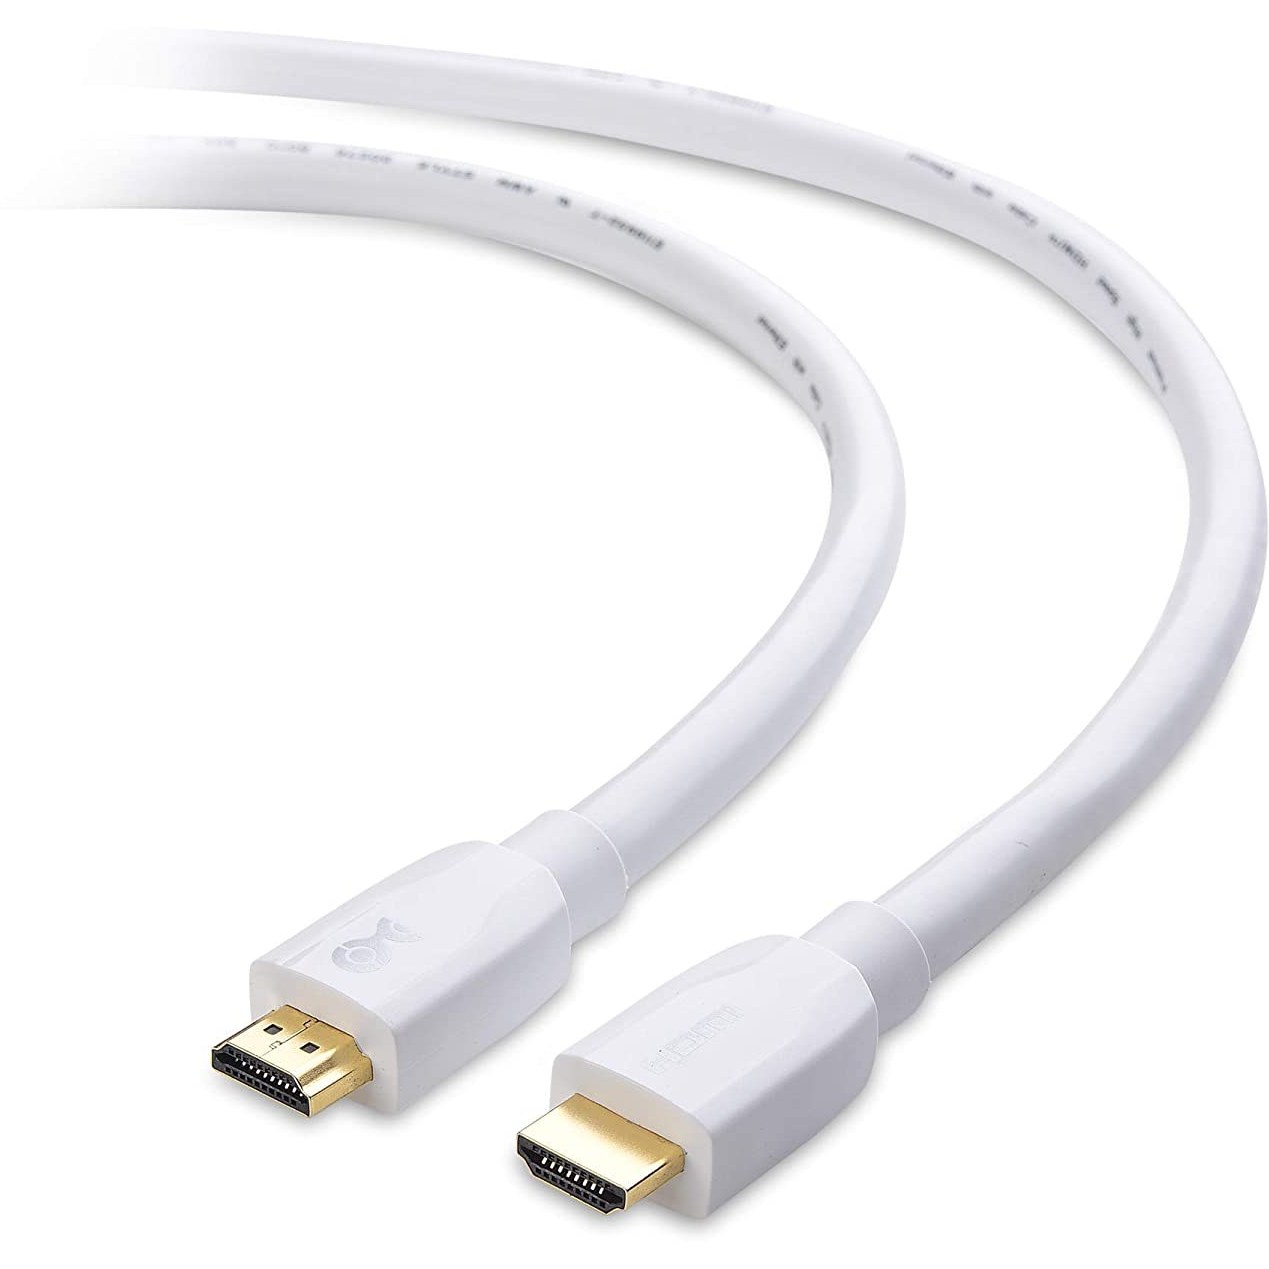 خرید و قیمت کابل مجهز به حق بیمه کابل HDMI سفید (کابل HDMI Premium) با  پشتیبانی 4K HDR - 6 پا ا [Premium Certified] Cable Matters White HDMI Cable  6 ft (Premium